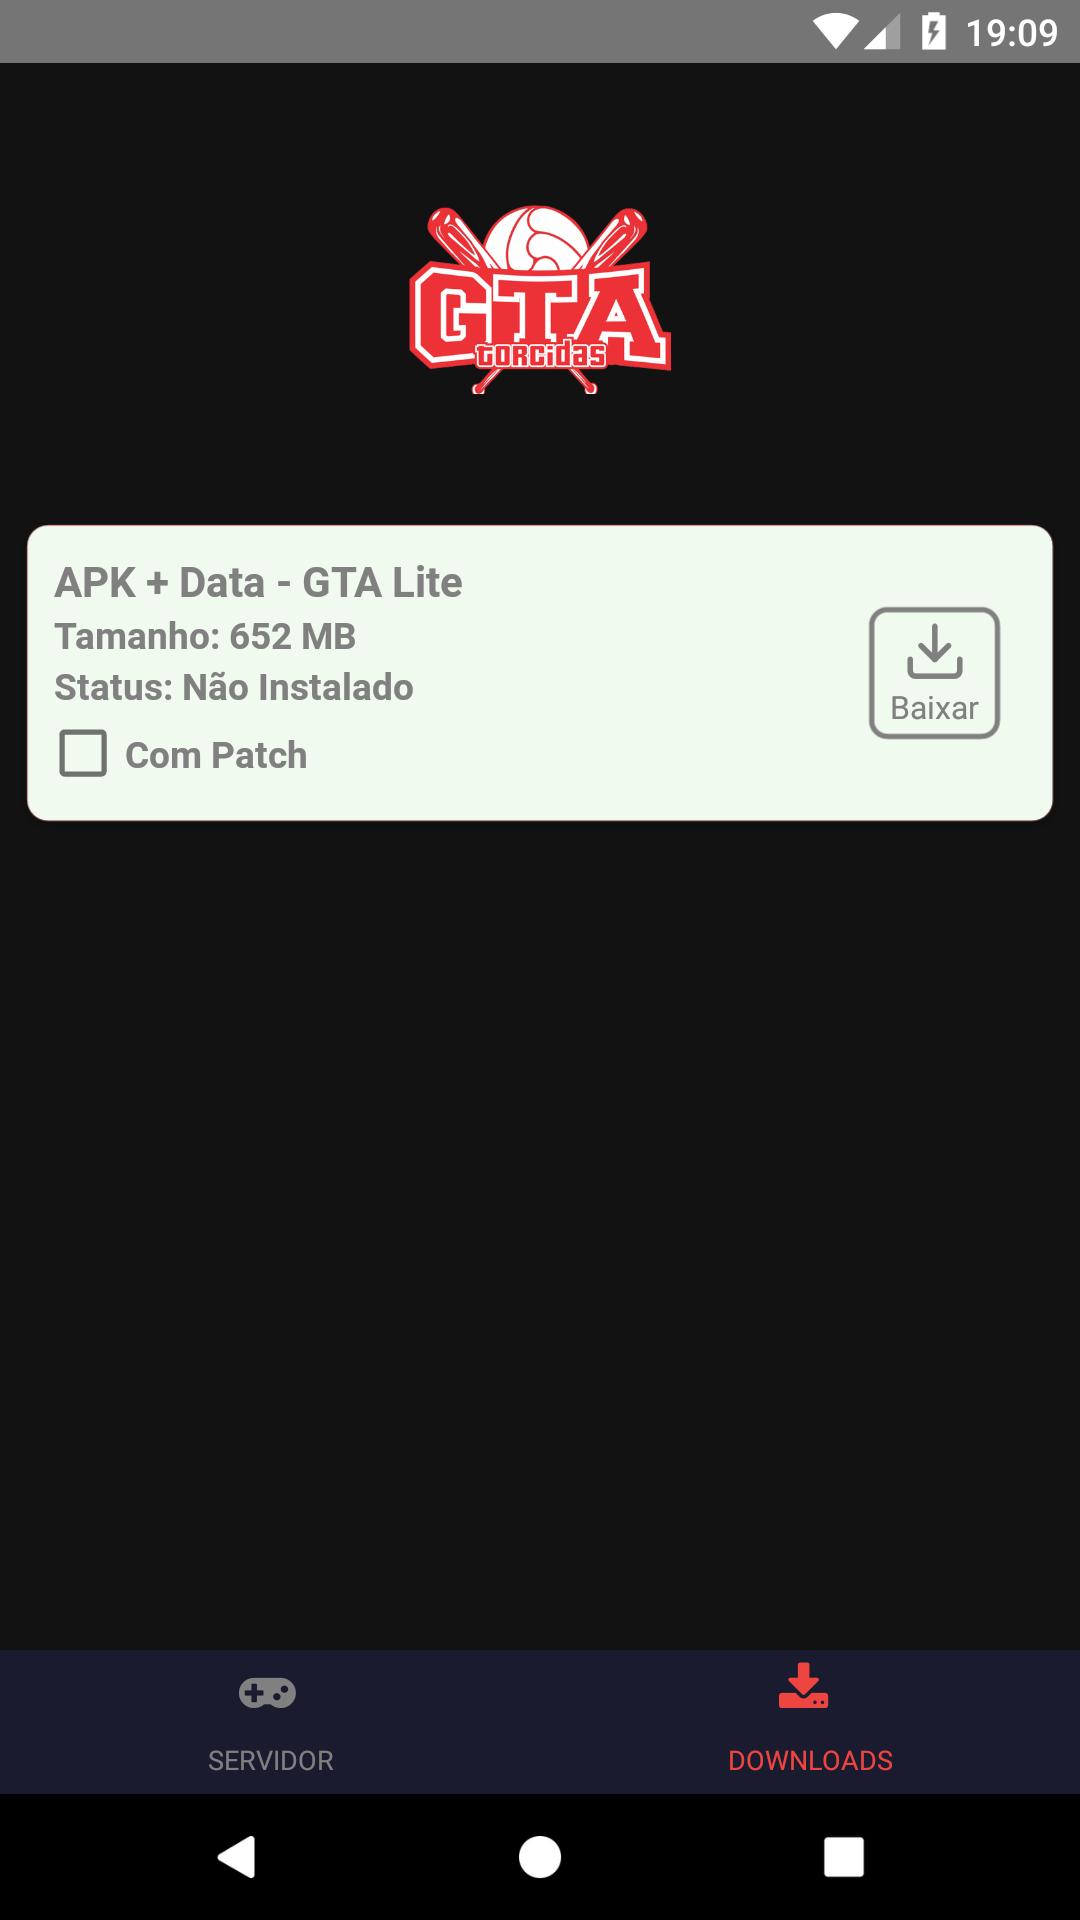 приложение ifruit gta 5 на андроид фото 100